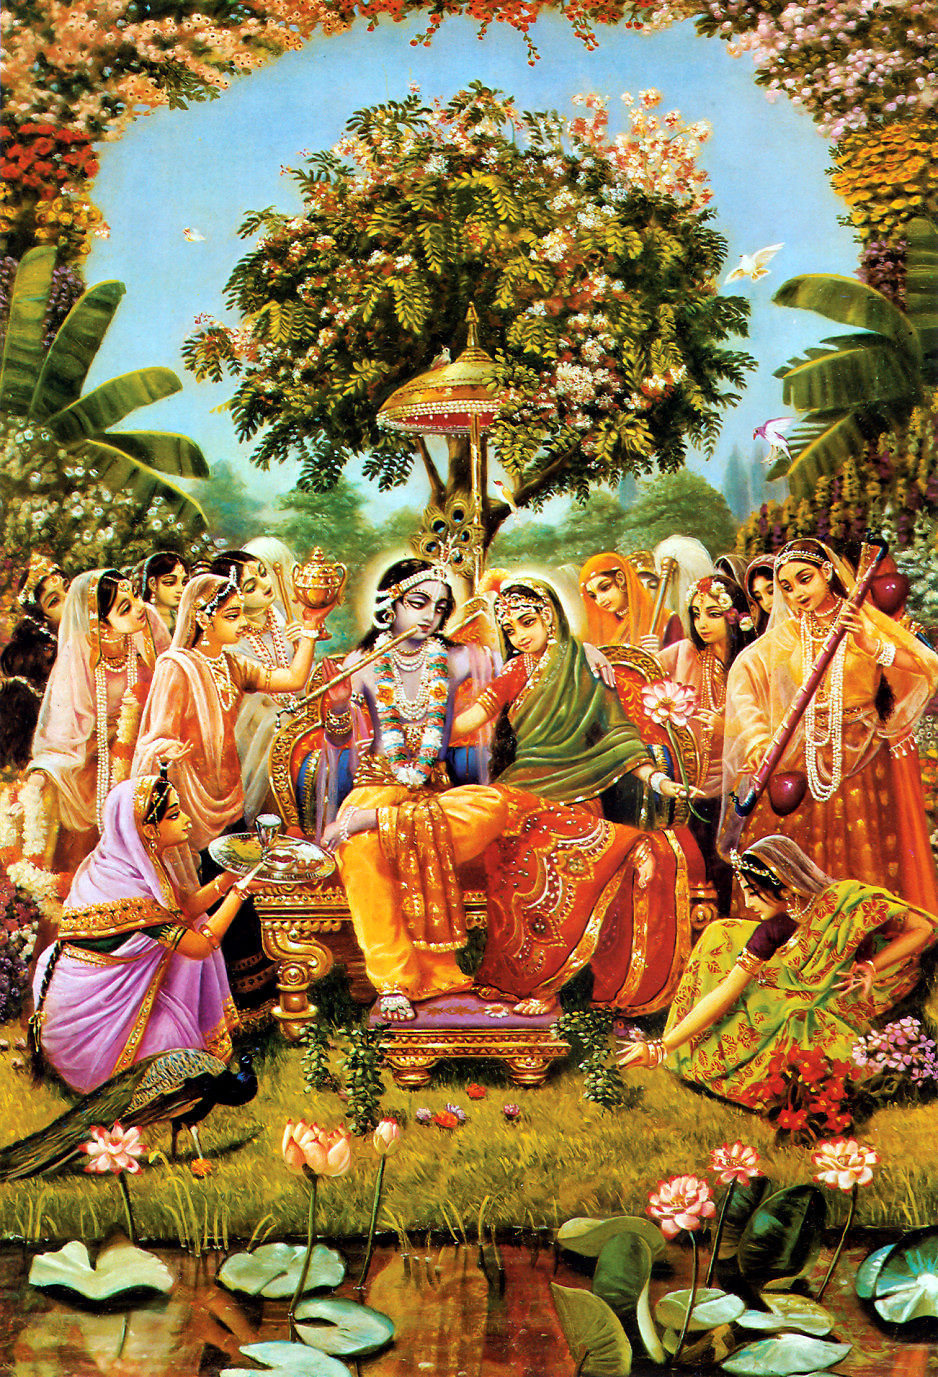 Download 21 lord-krishna-and-arjuna-hd-wallpapers Lord-Krishna-And-Arjuna-Wallpapers-Wallpaper-Cave.jpg